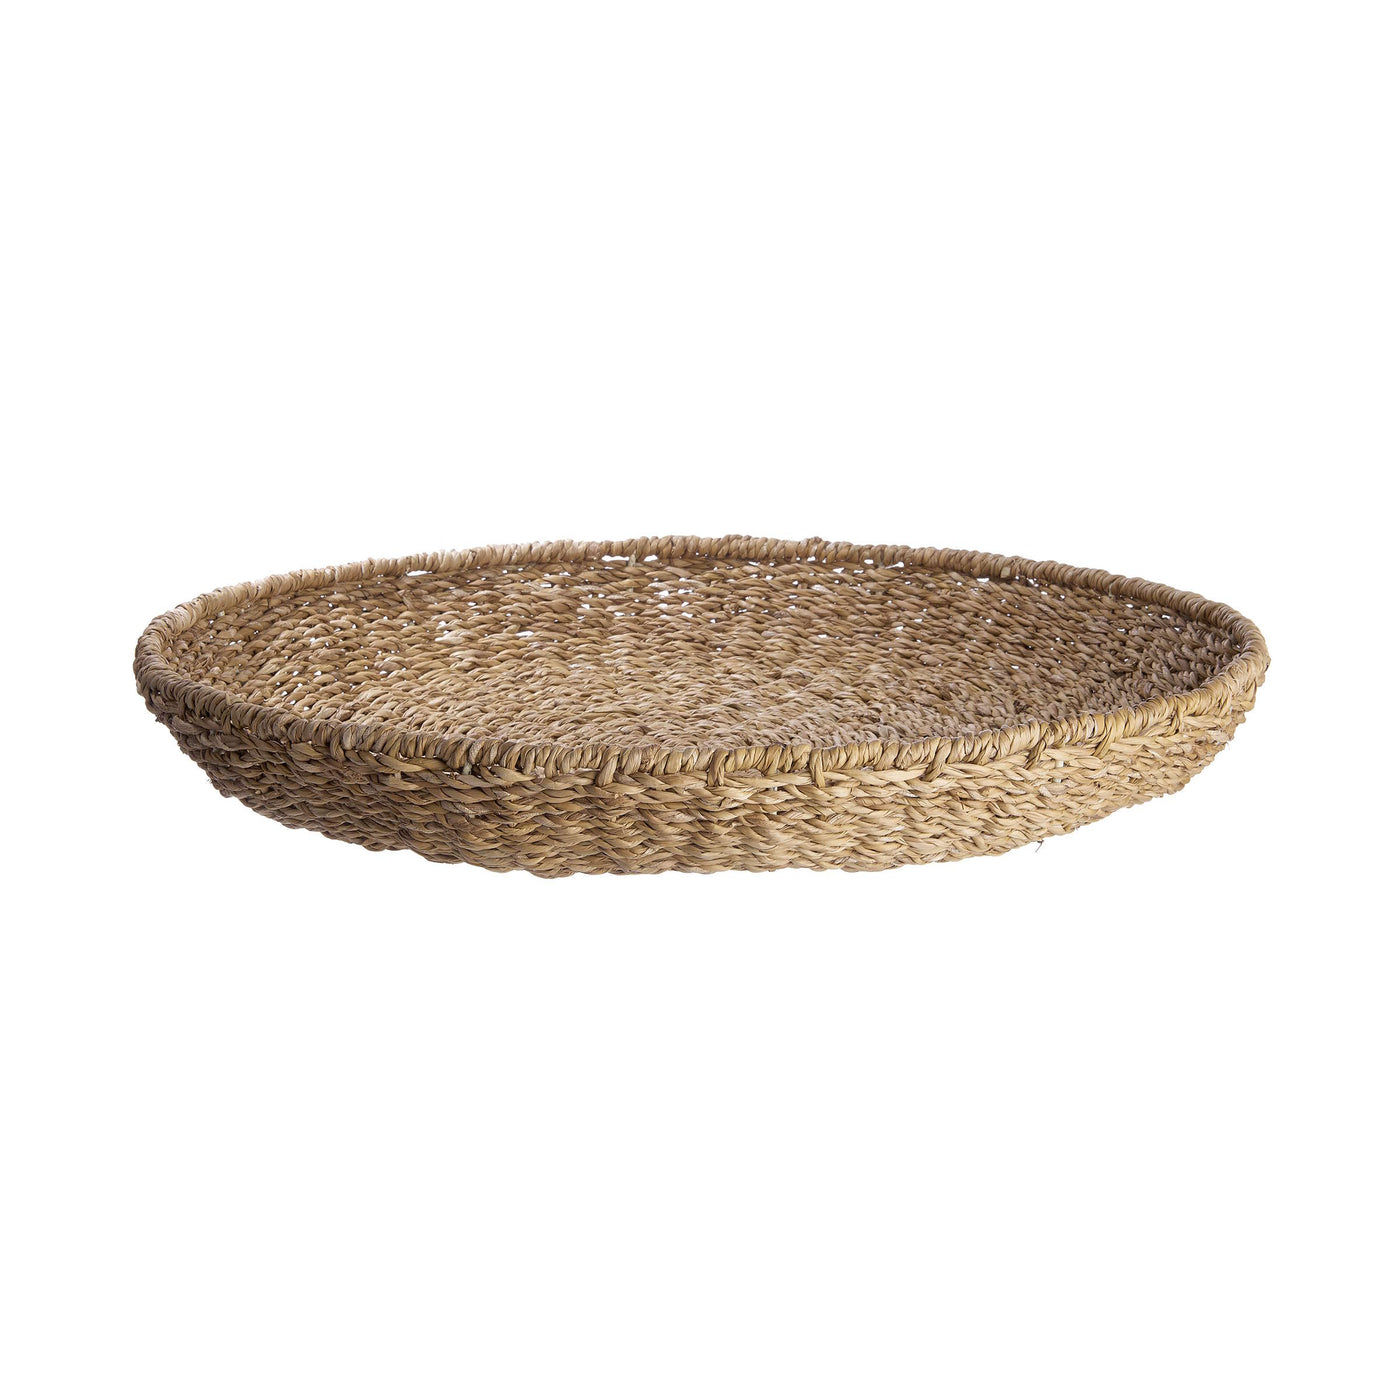 RELEASE Decorative bowl Ã˜50cm